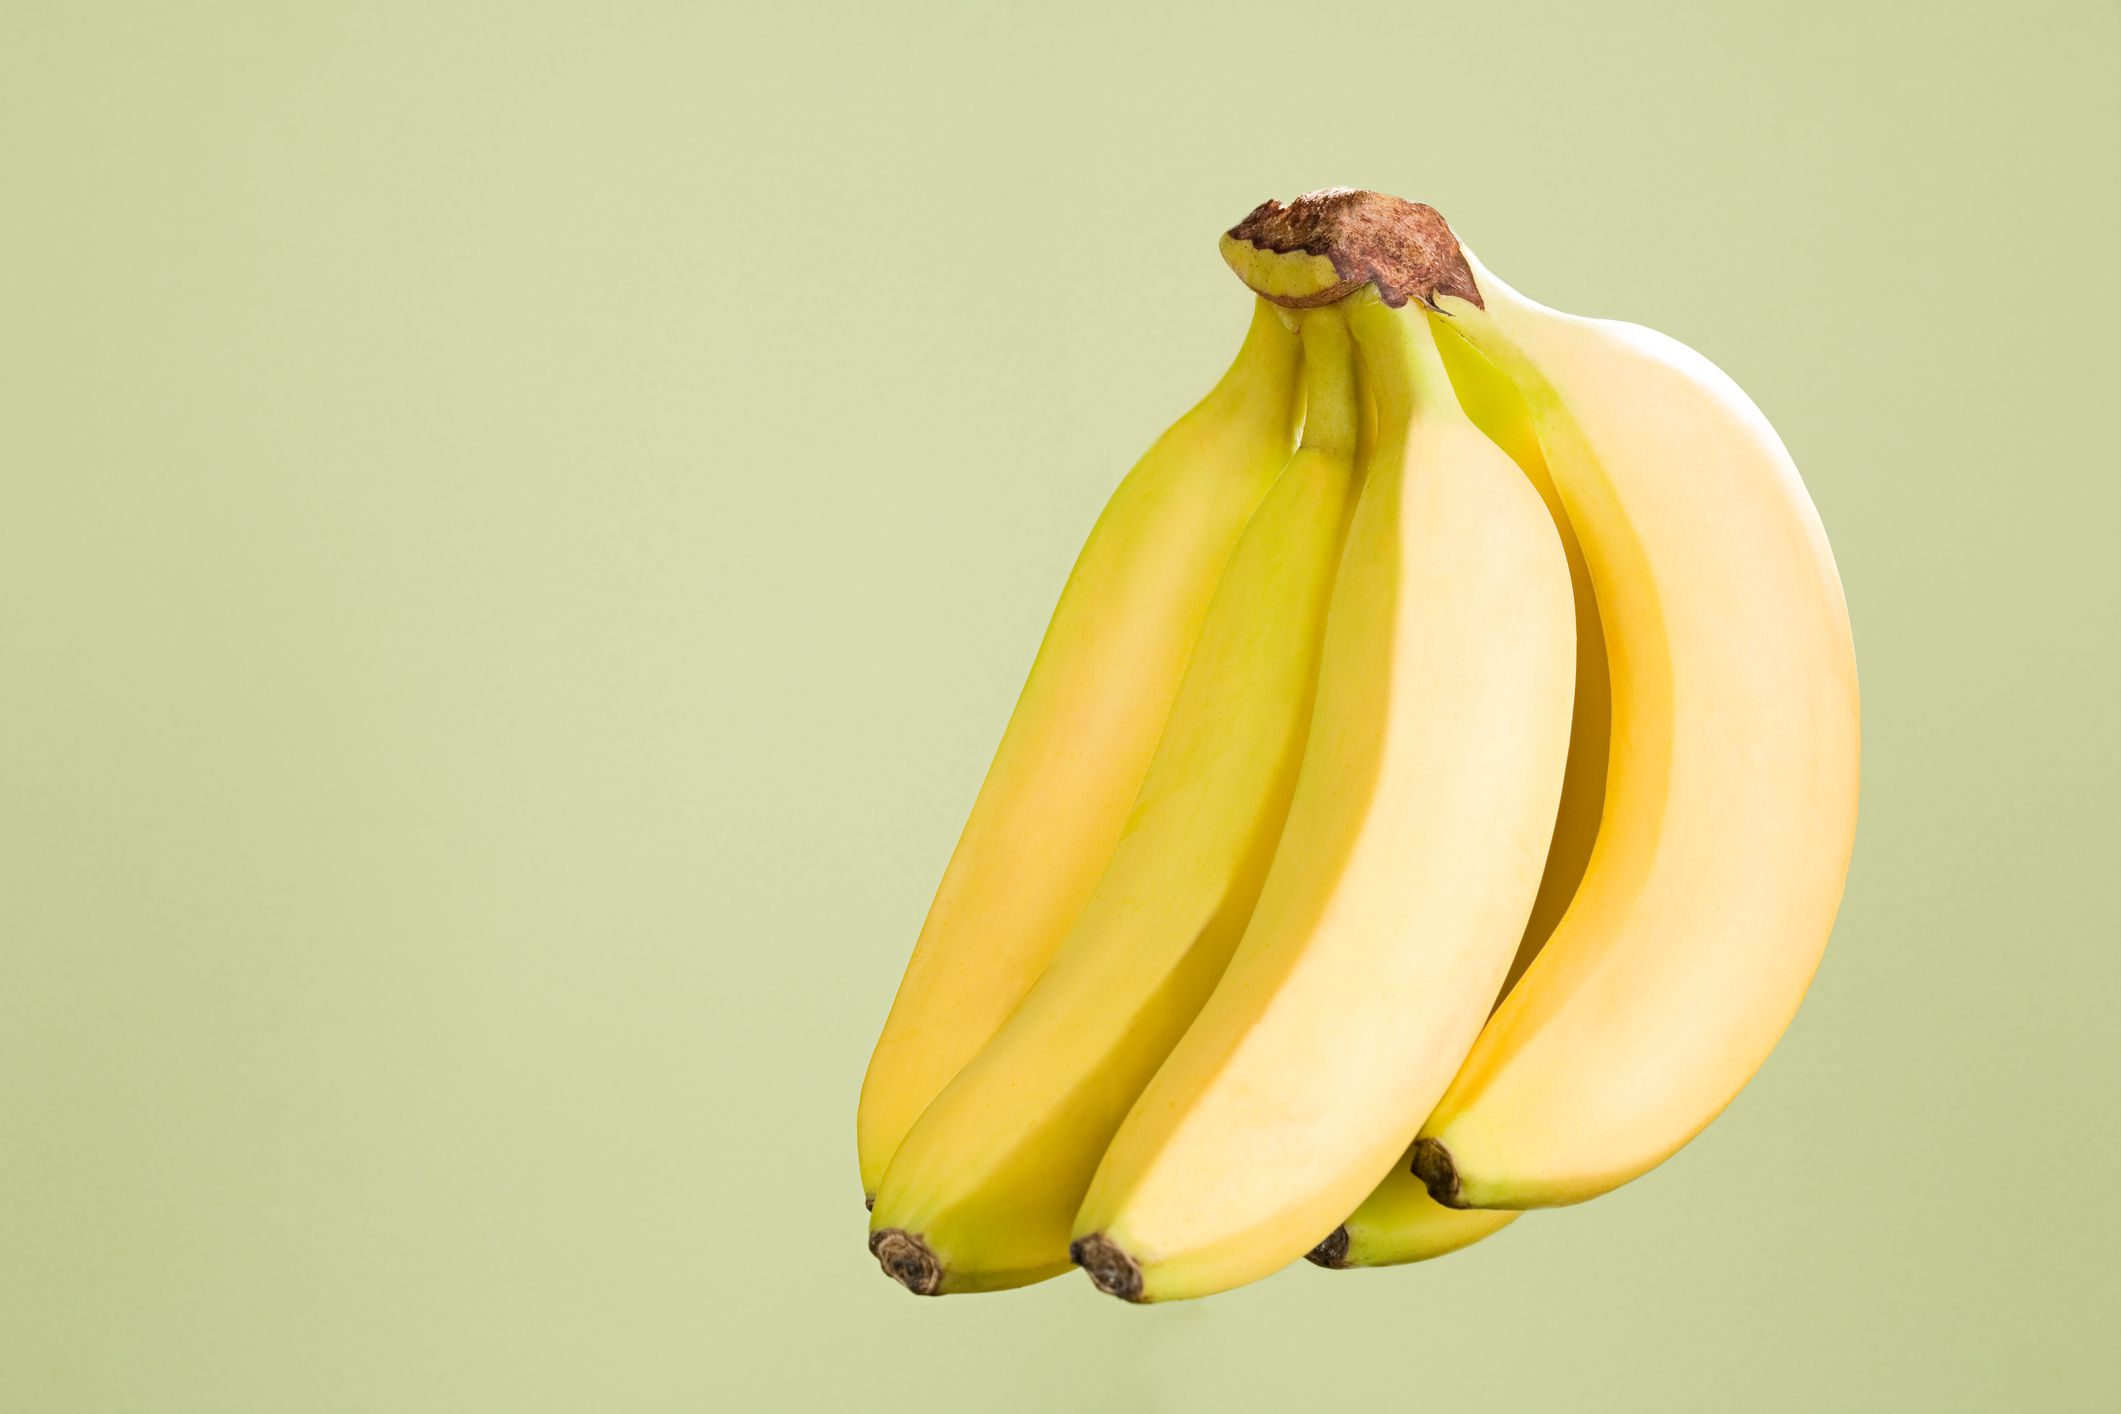 lo recomiendan los fisicoculturistas; por este motivo debería comer plátano tras hacer ejercicio